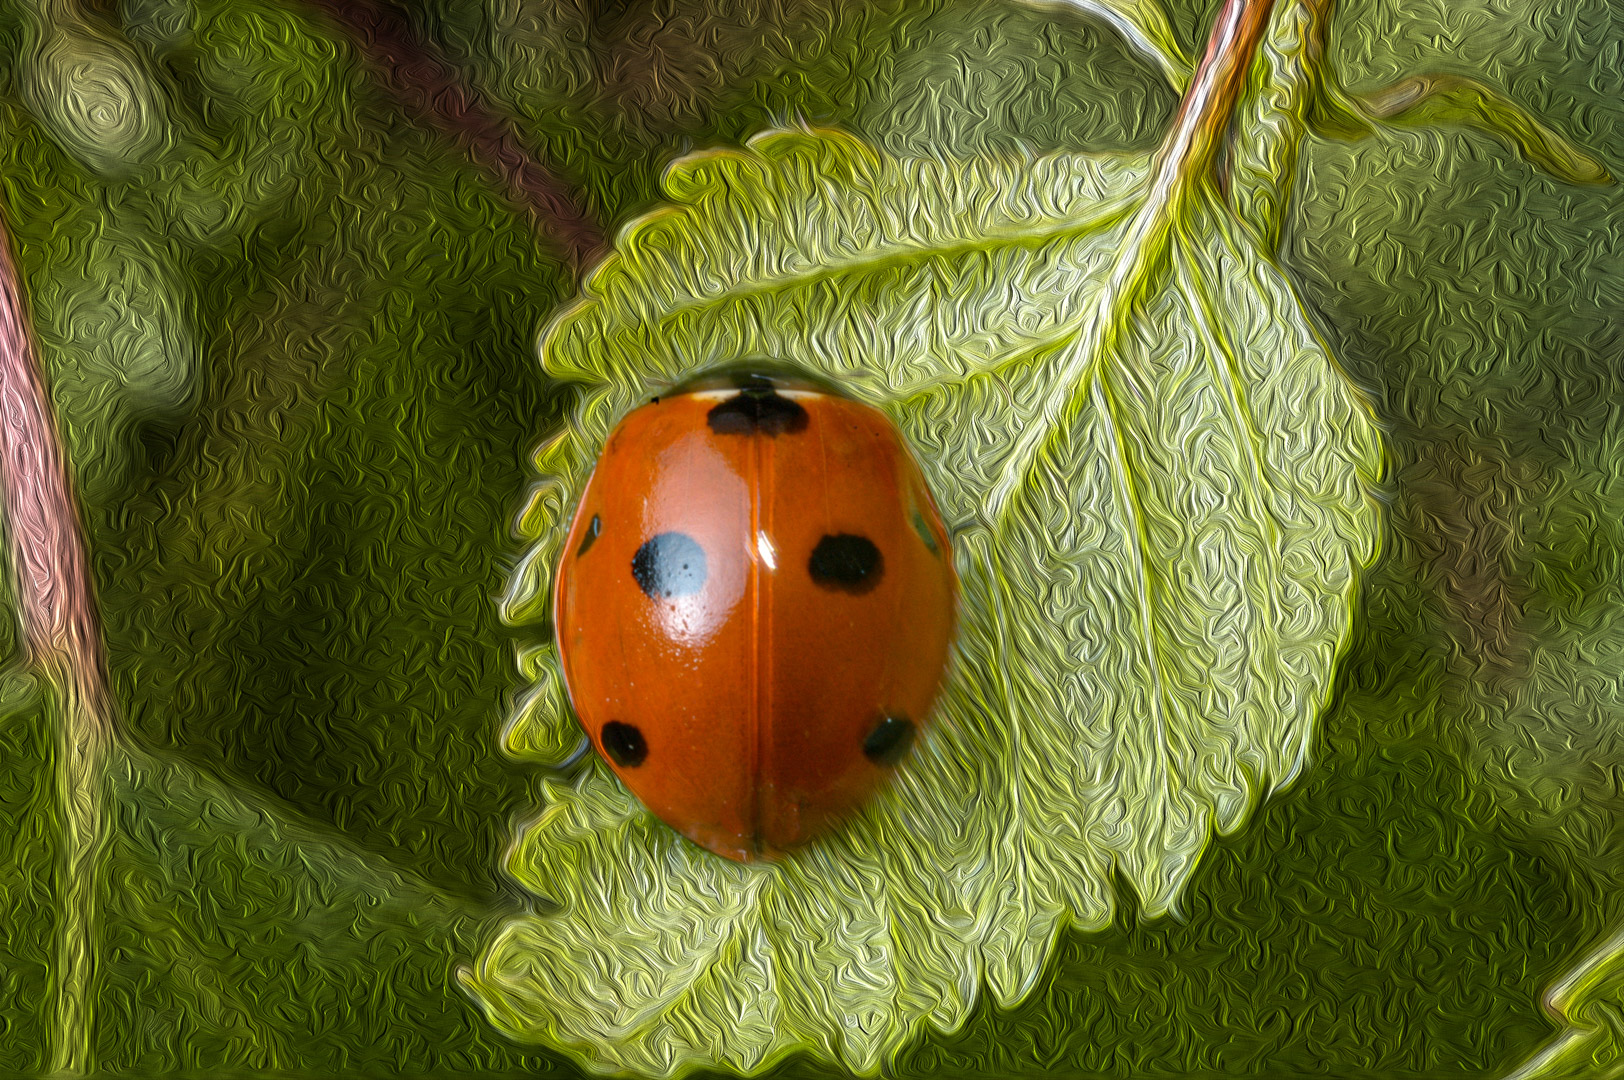 Ladybug Dream by Georges Dormoy